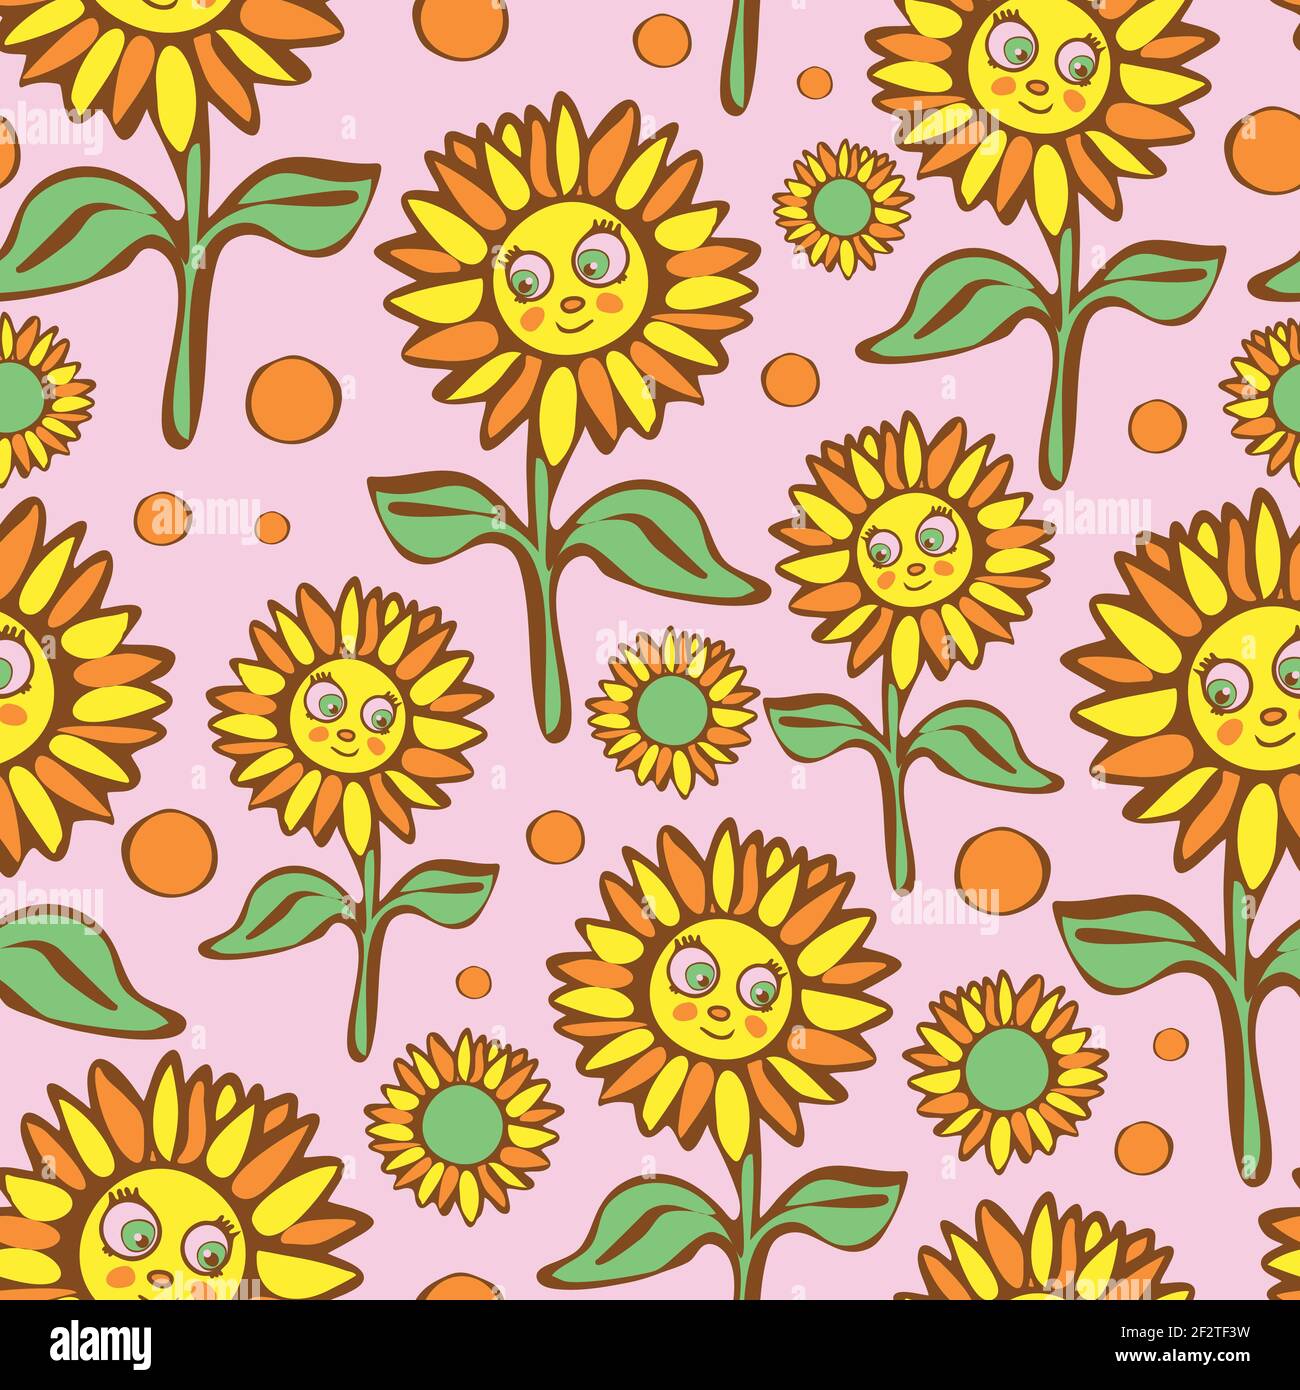 Nahtloses Vektor-Muster mit Sonnenblumen auf rosa Hintergrund. Cartoon floral Smiley Gesicht Wallpaper Design für Kinder. Happy Fashion Textil. Stock Vektor